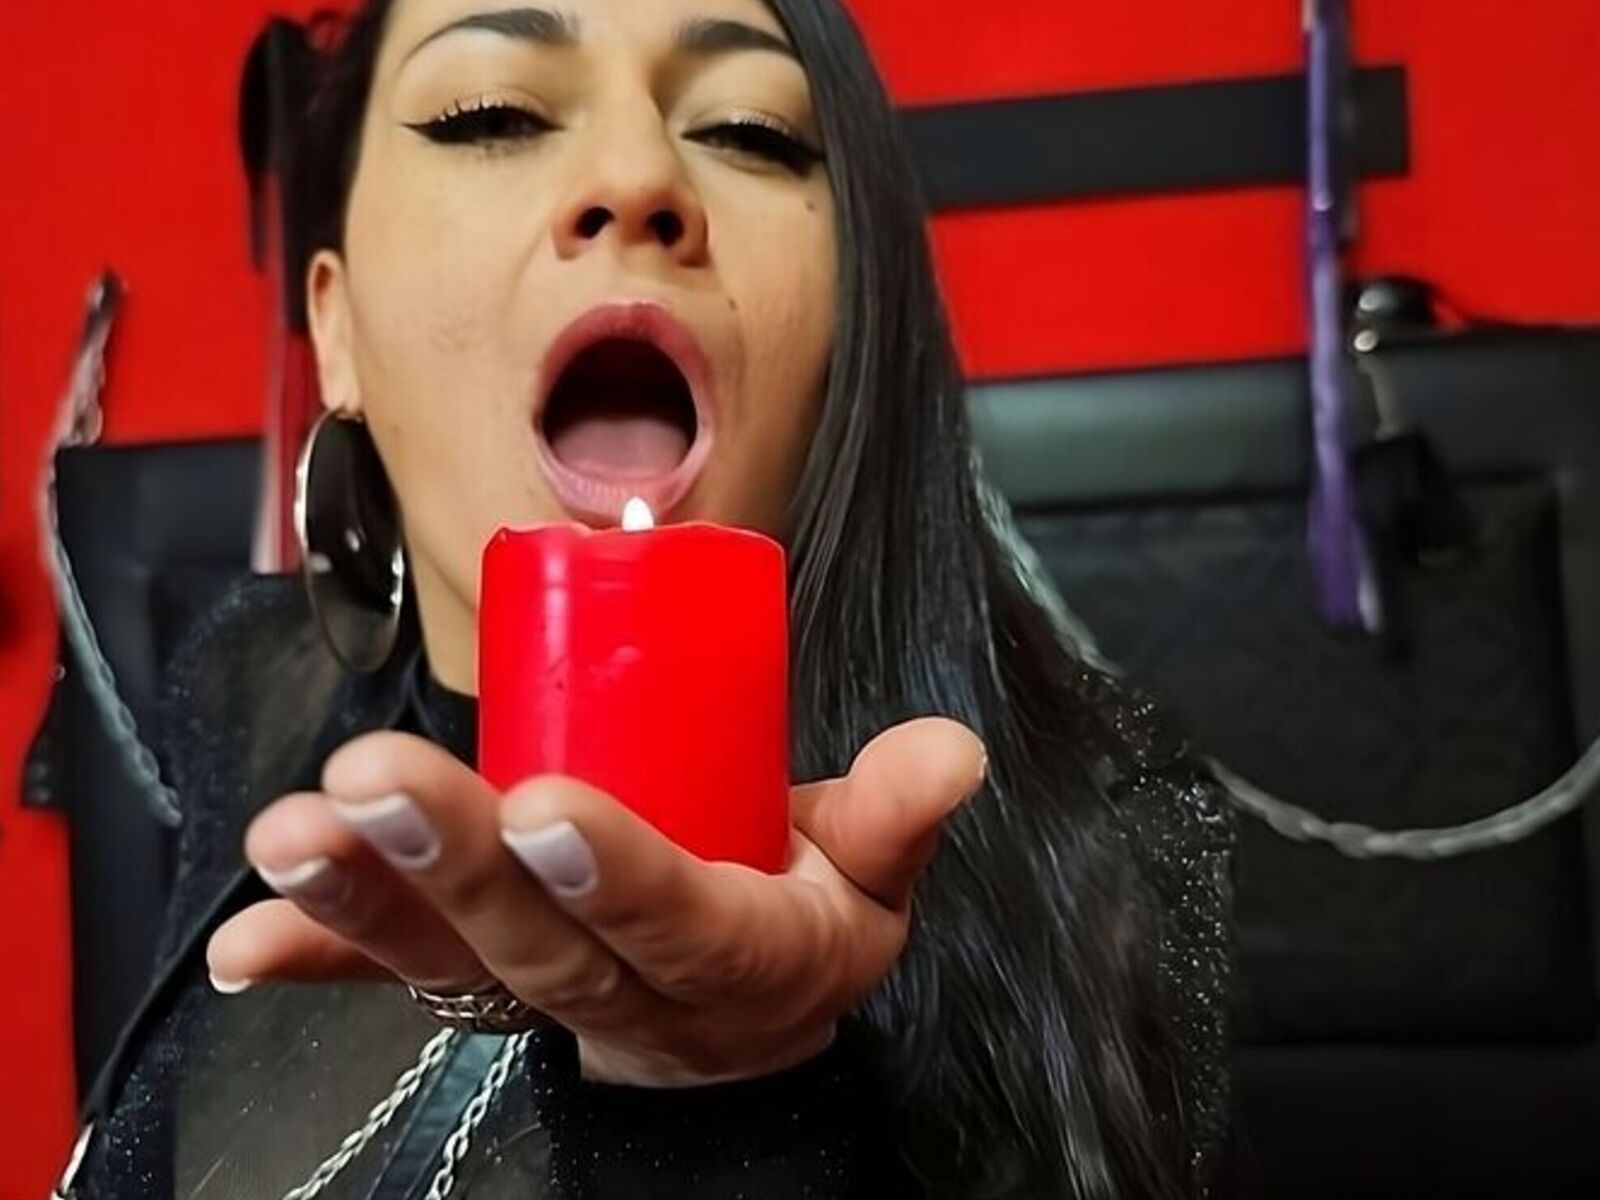 FridaRoms - Live Sex Cam profile on Livejasmin